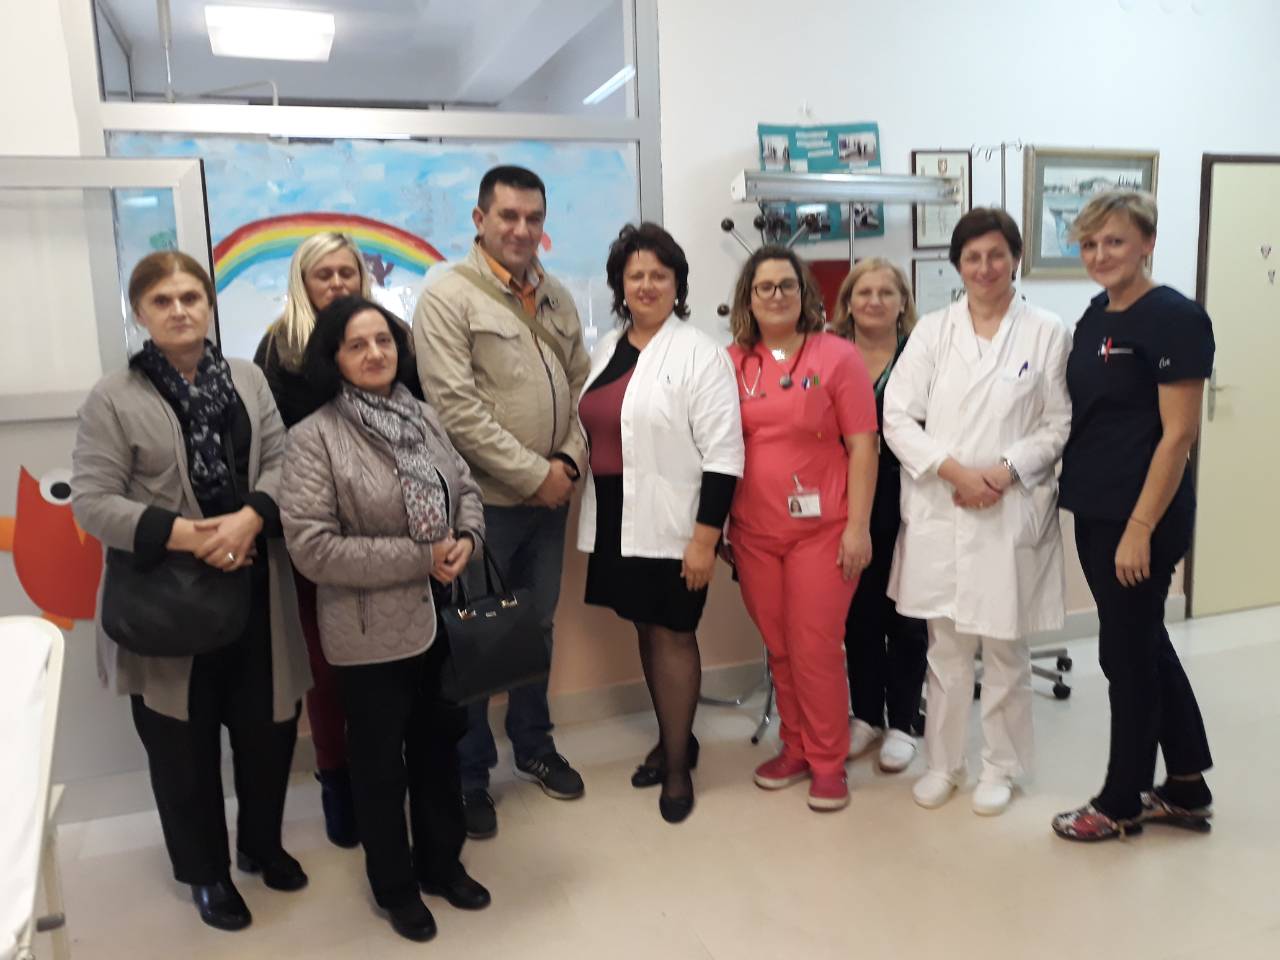 Djelatnici Samostalne narodne knjižnice Gospić posjetili su dječji odjel Opće bolnice Gospić